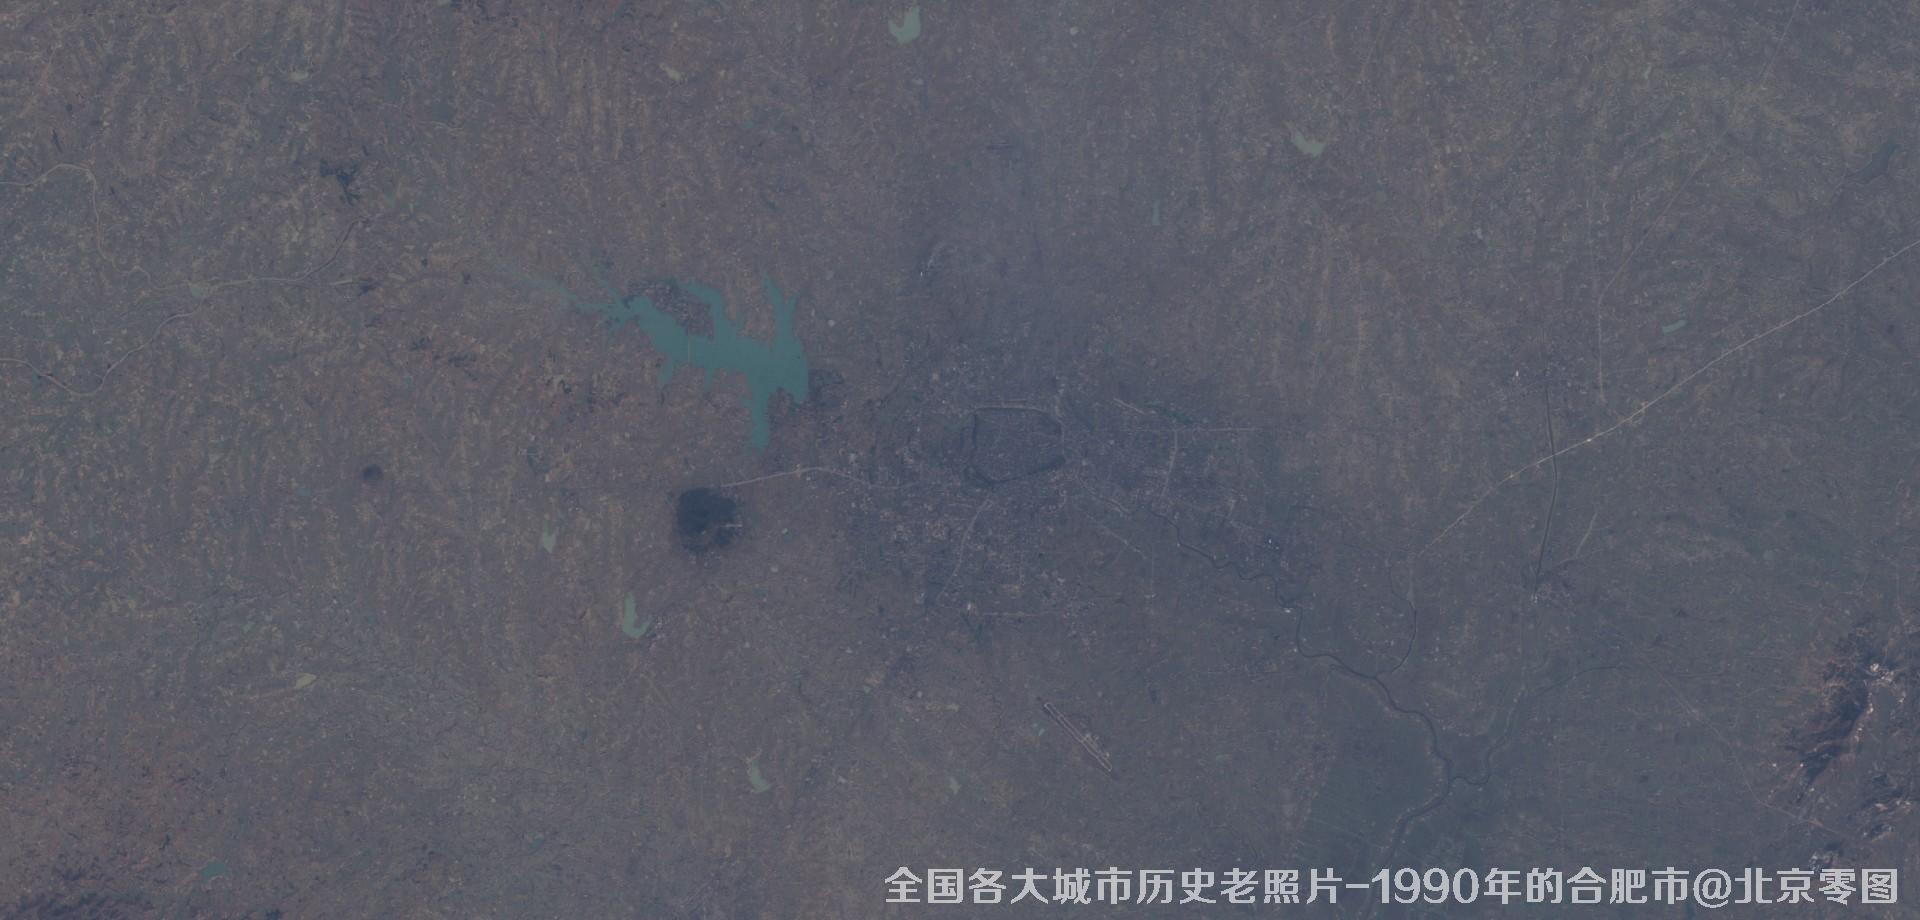 美国Landsat卫星拍摄的1990年的安徽省合肥市历史卫星影像图